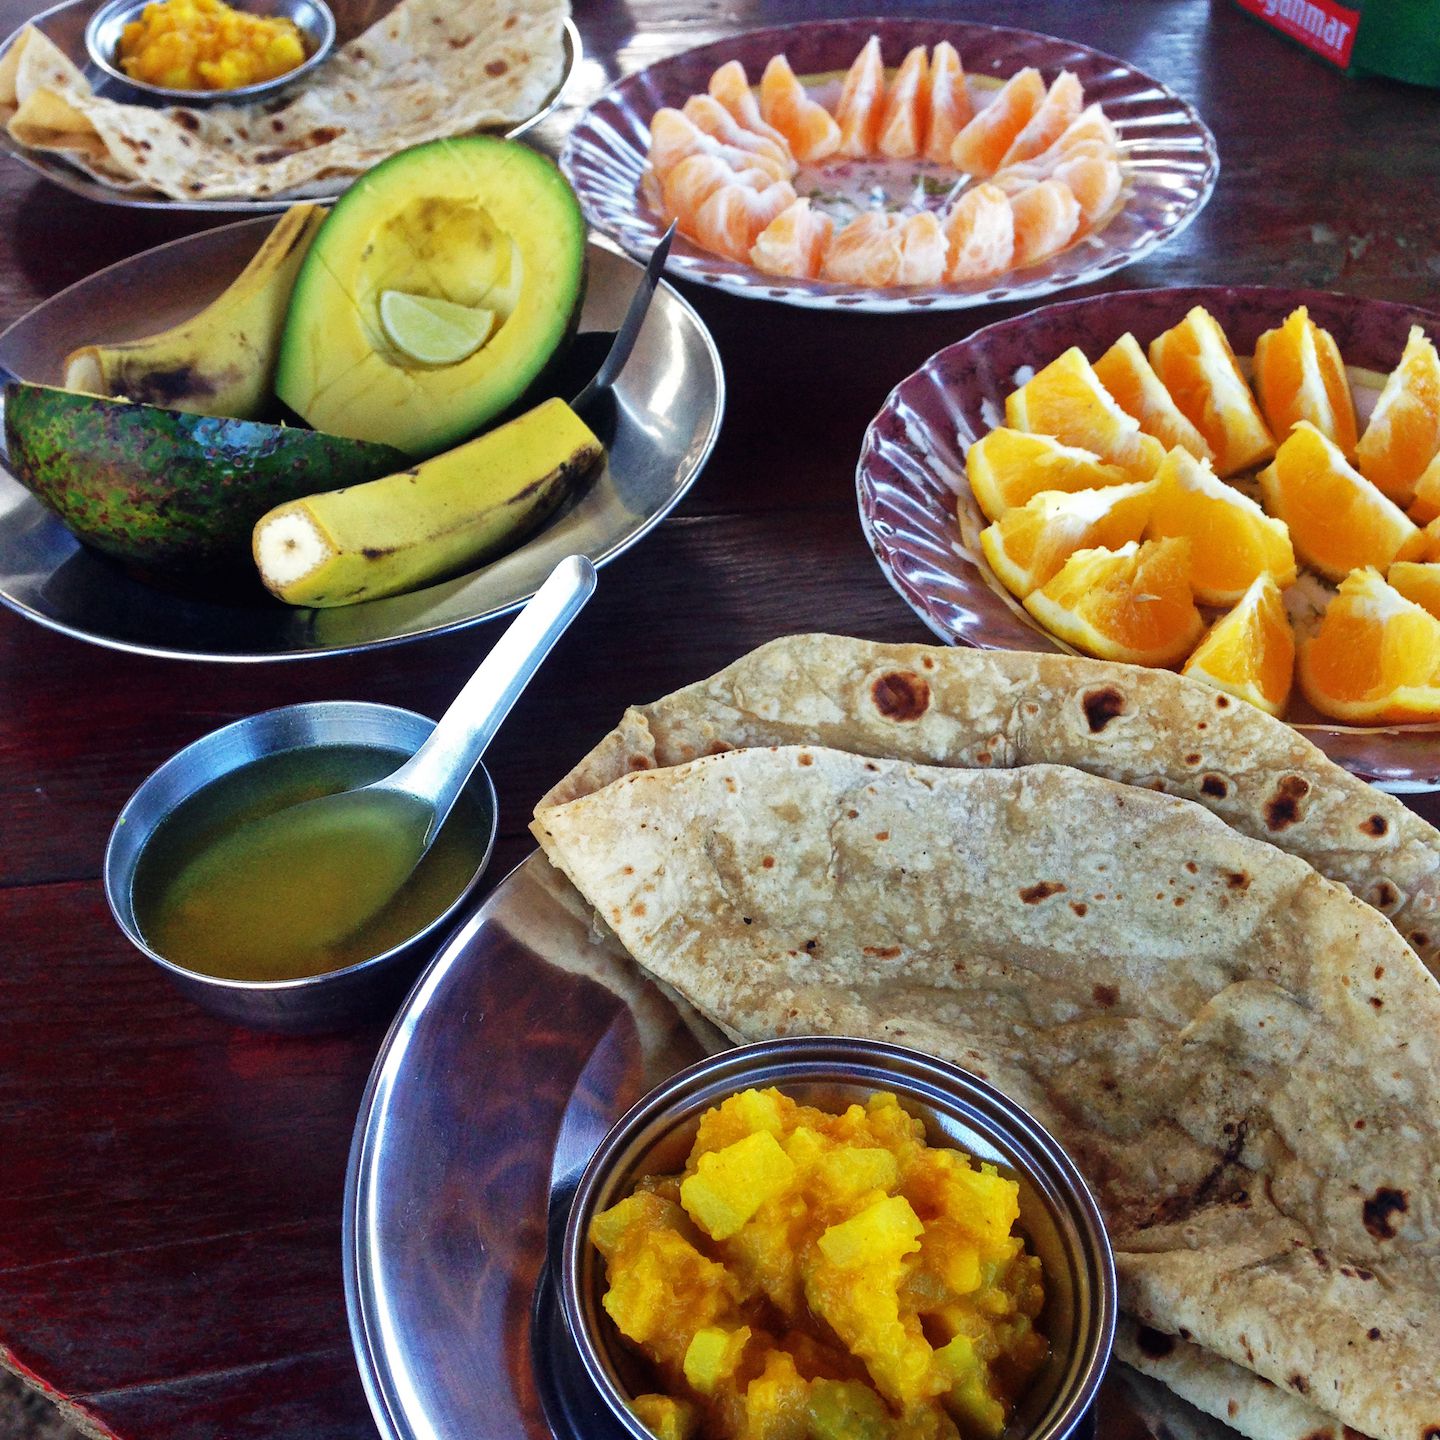 Meal during our trek in Kalaw, Myanmar